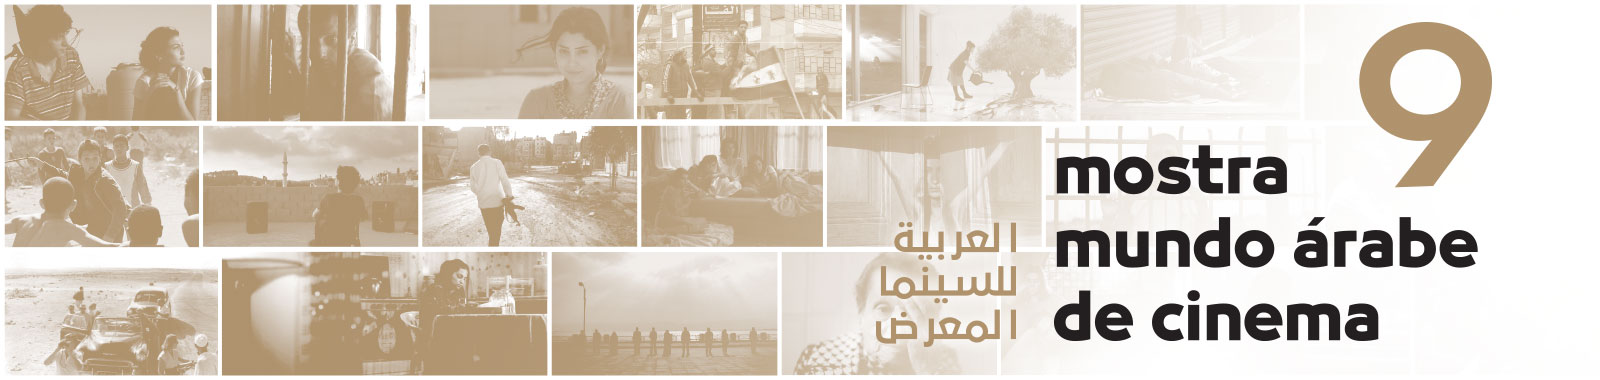 9ª Mostra Mundo Árabe de Cinema